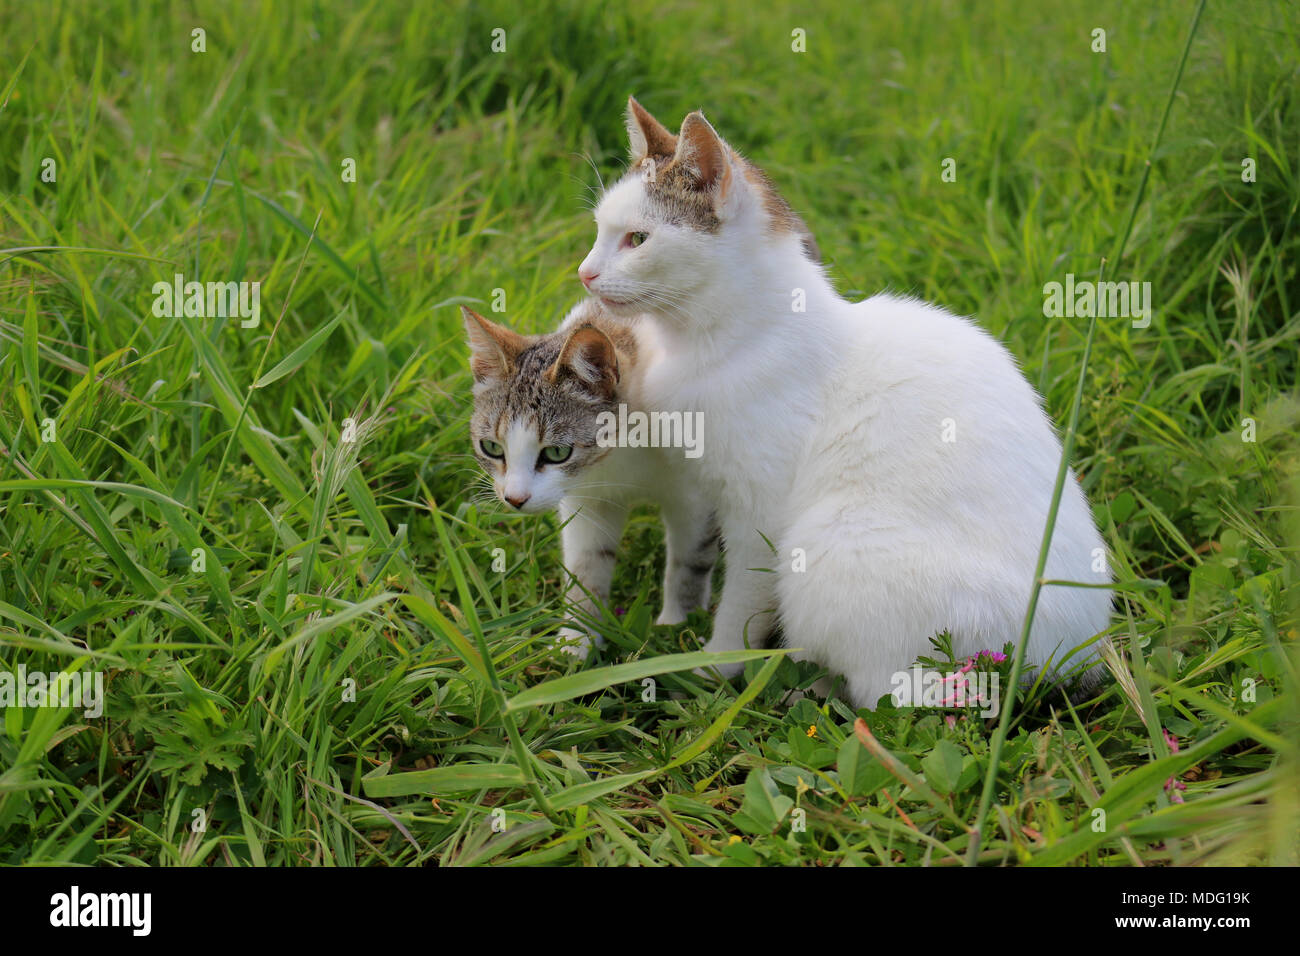 Dos gato doméstico atigrado negro, blanco, sentado en un prado Foto de stock